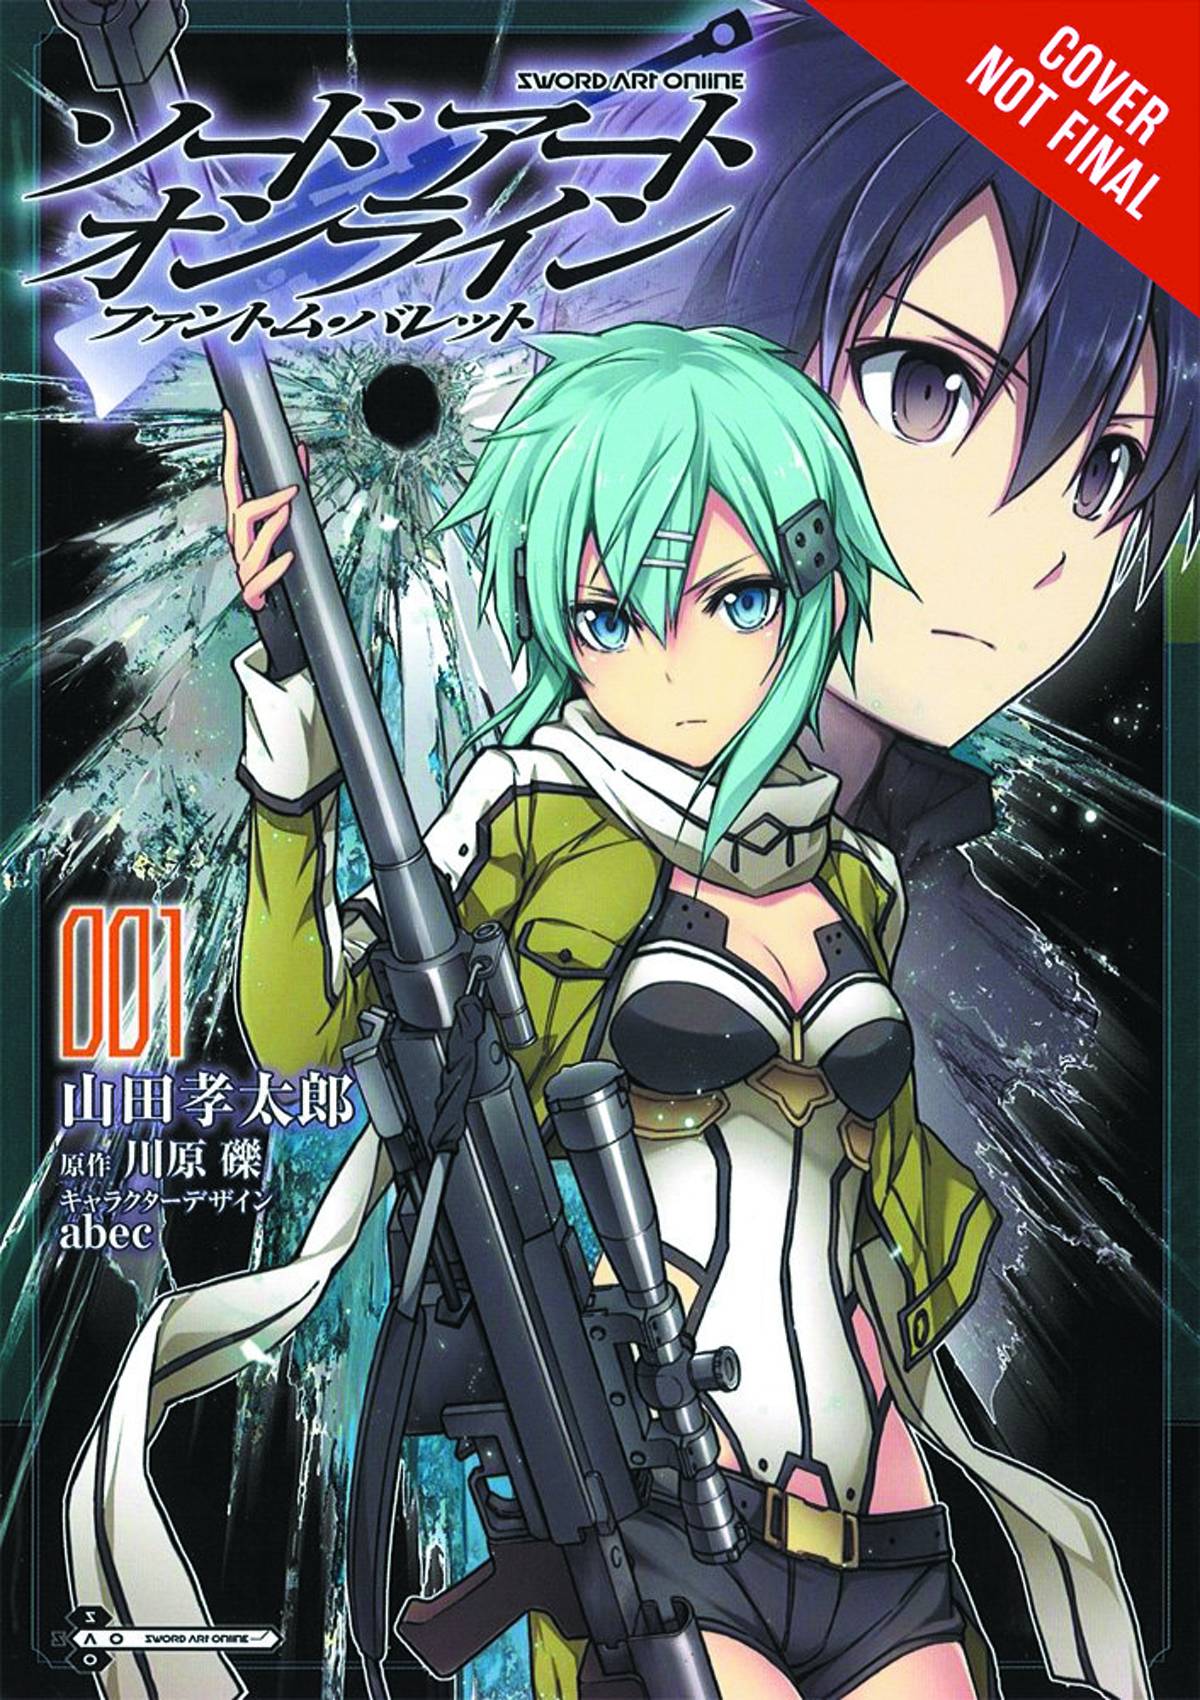 Sword Art Online Phantom Bullet Manga Volume 1